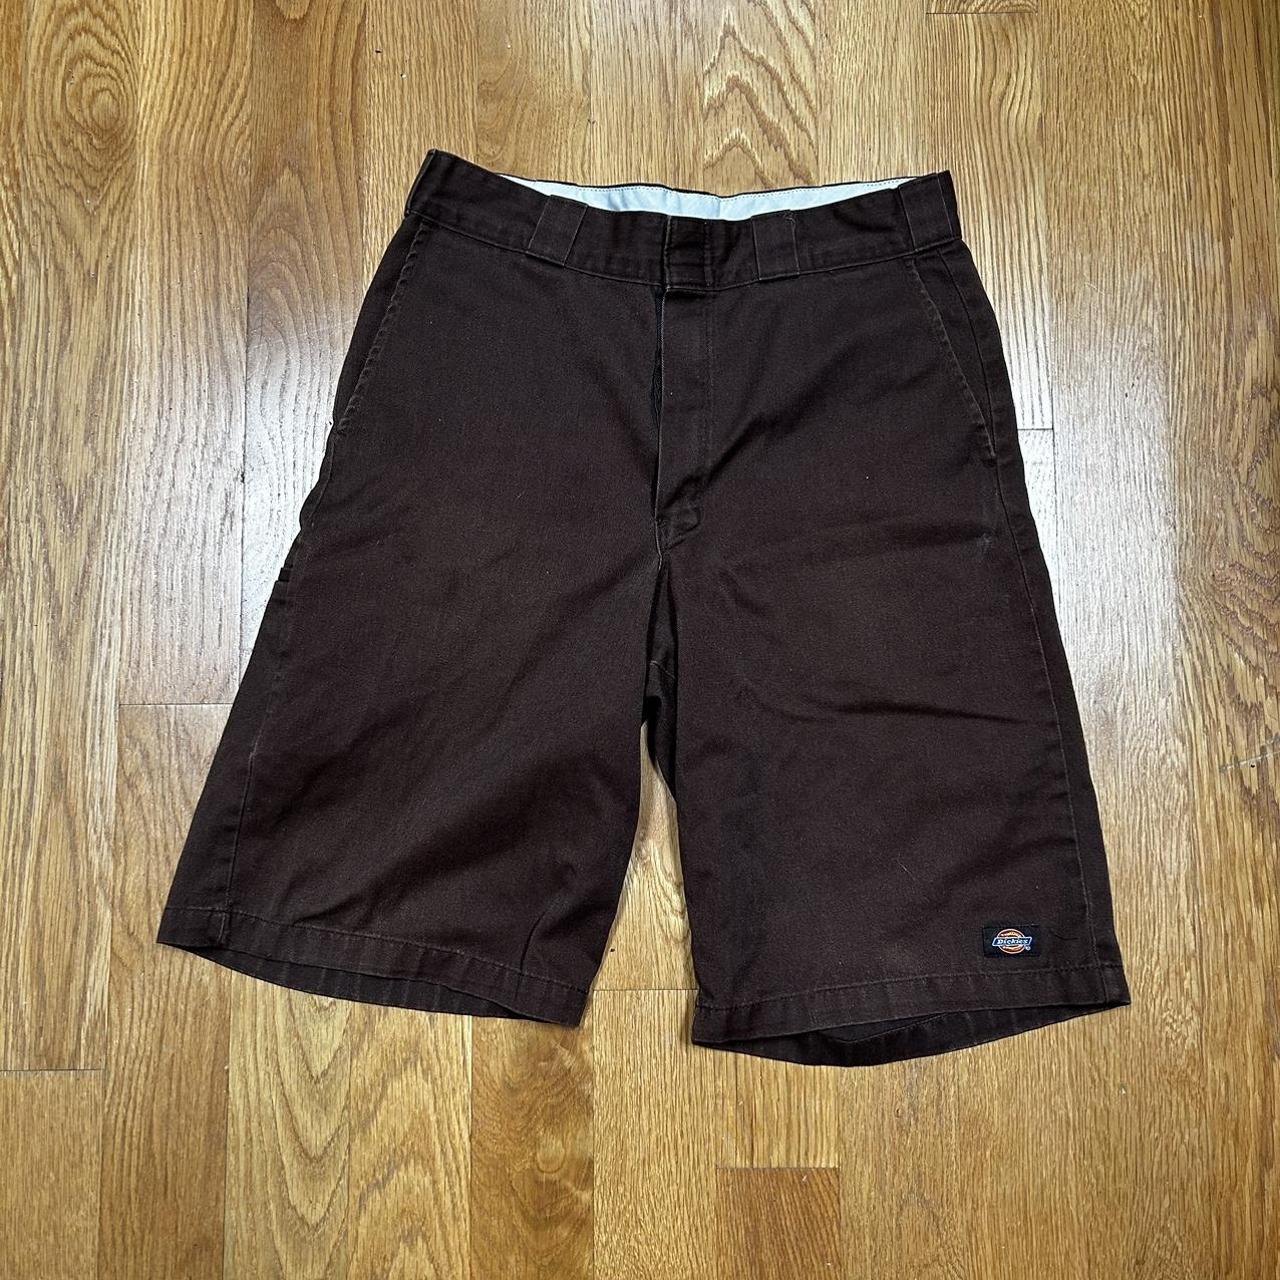 Dark brown dickies shorts - Depop